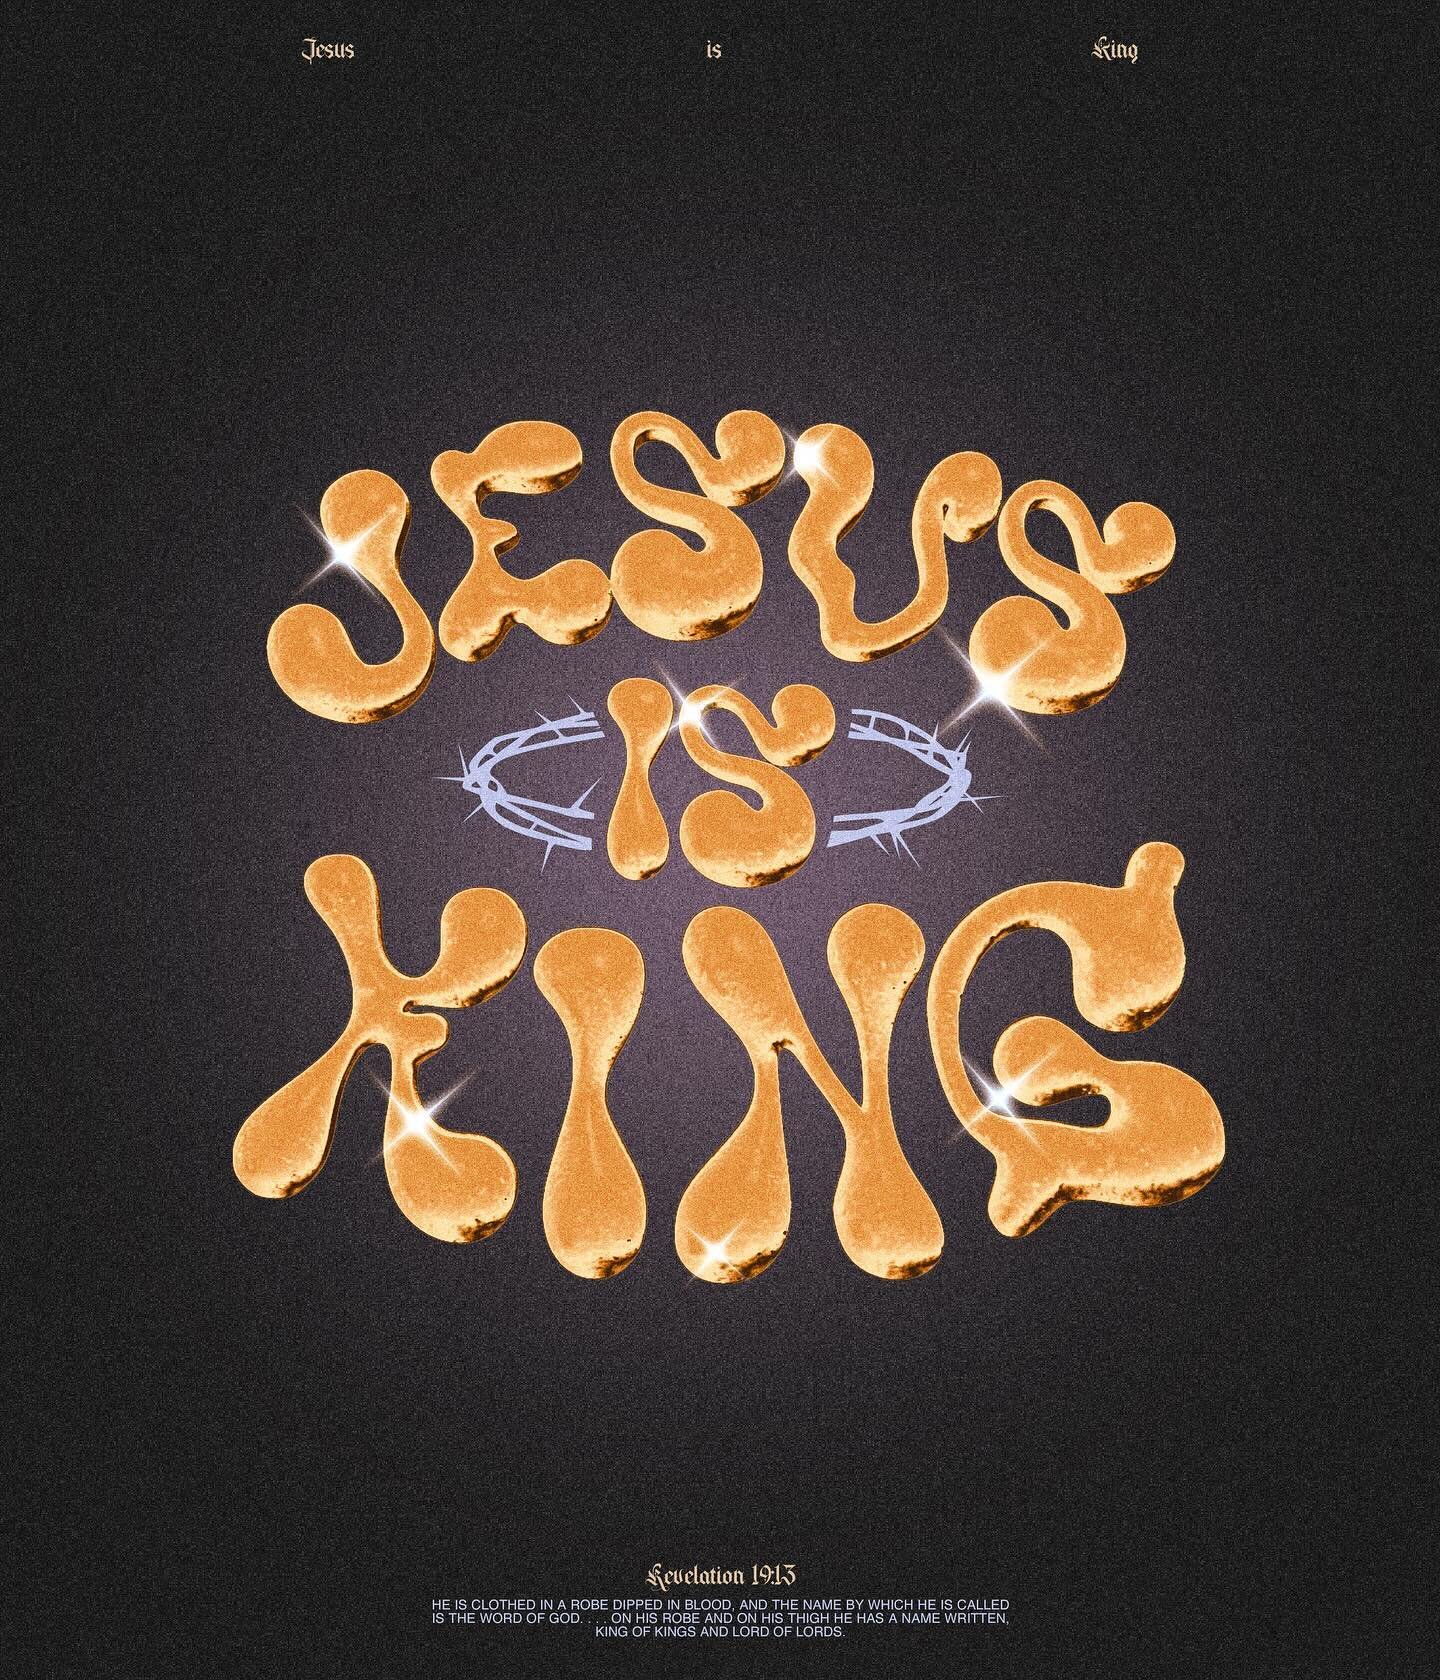 Jesus is King 👑